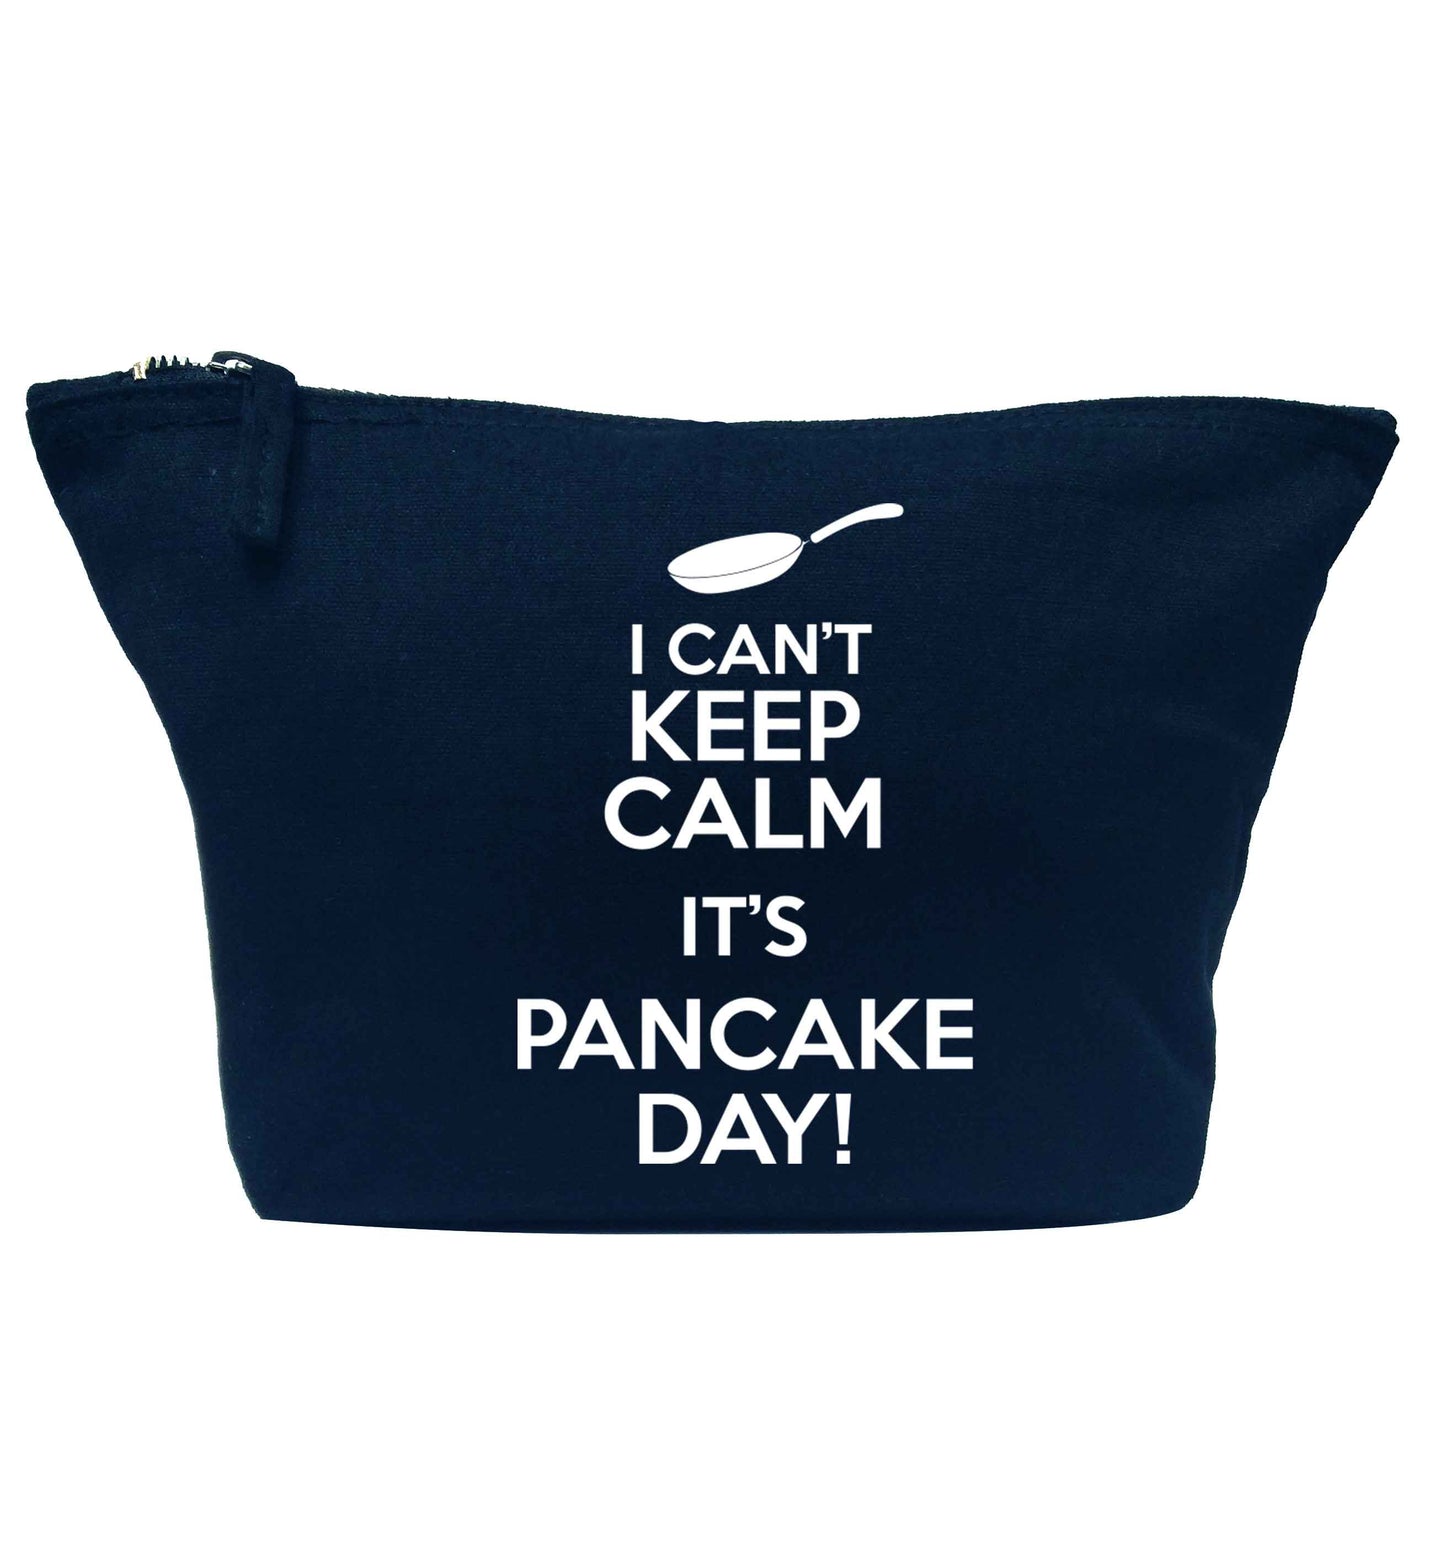 I can't keep calm it's pancake day! navy makeup bag